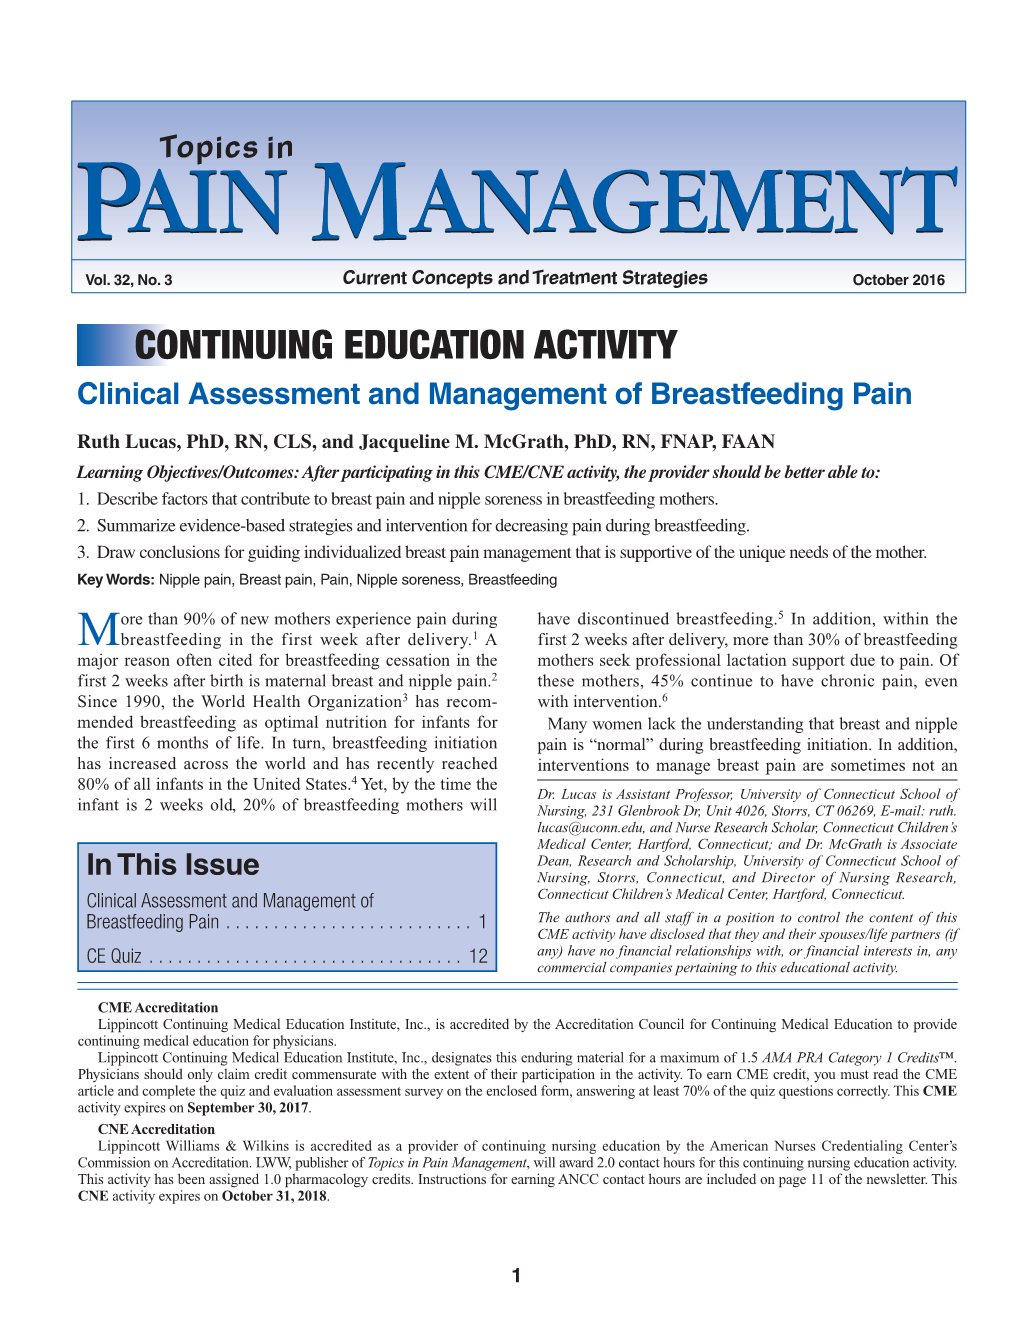 Pain Management Pain Management